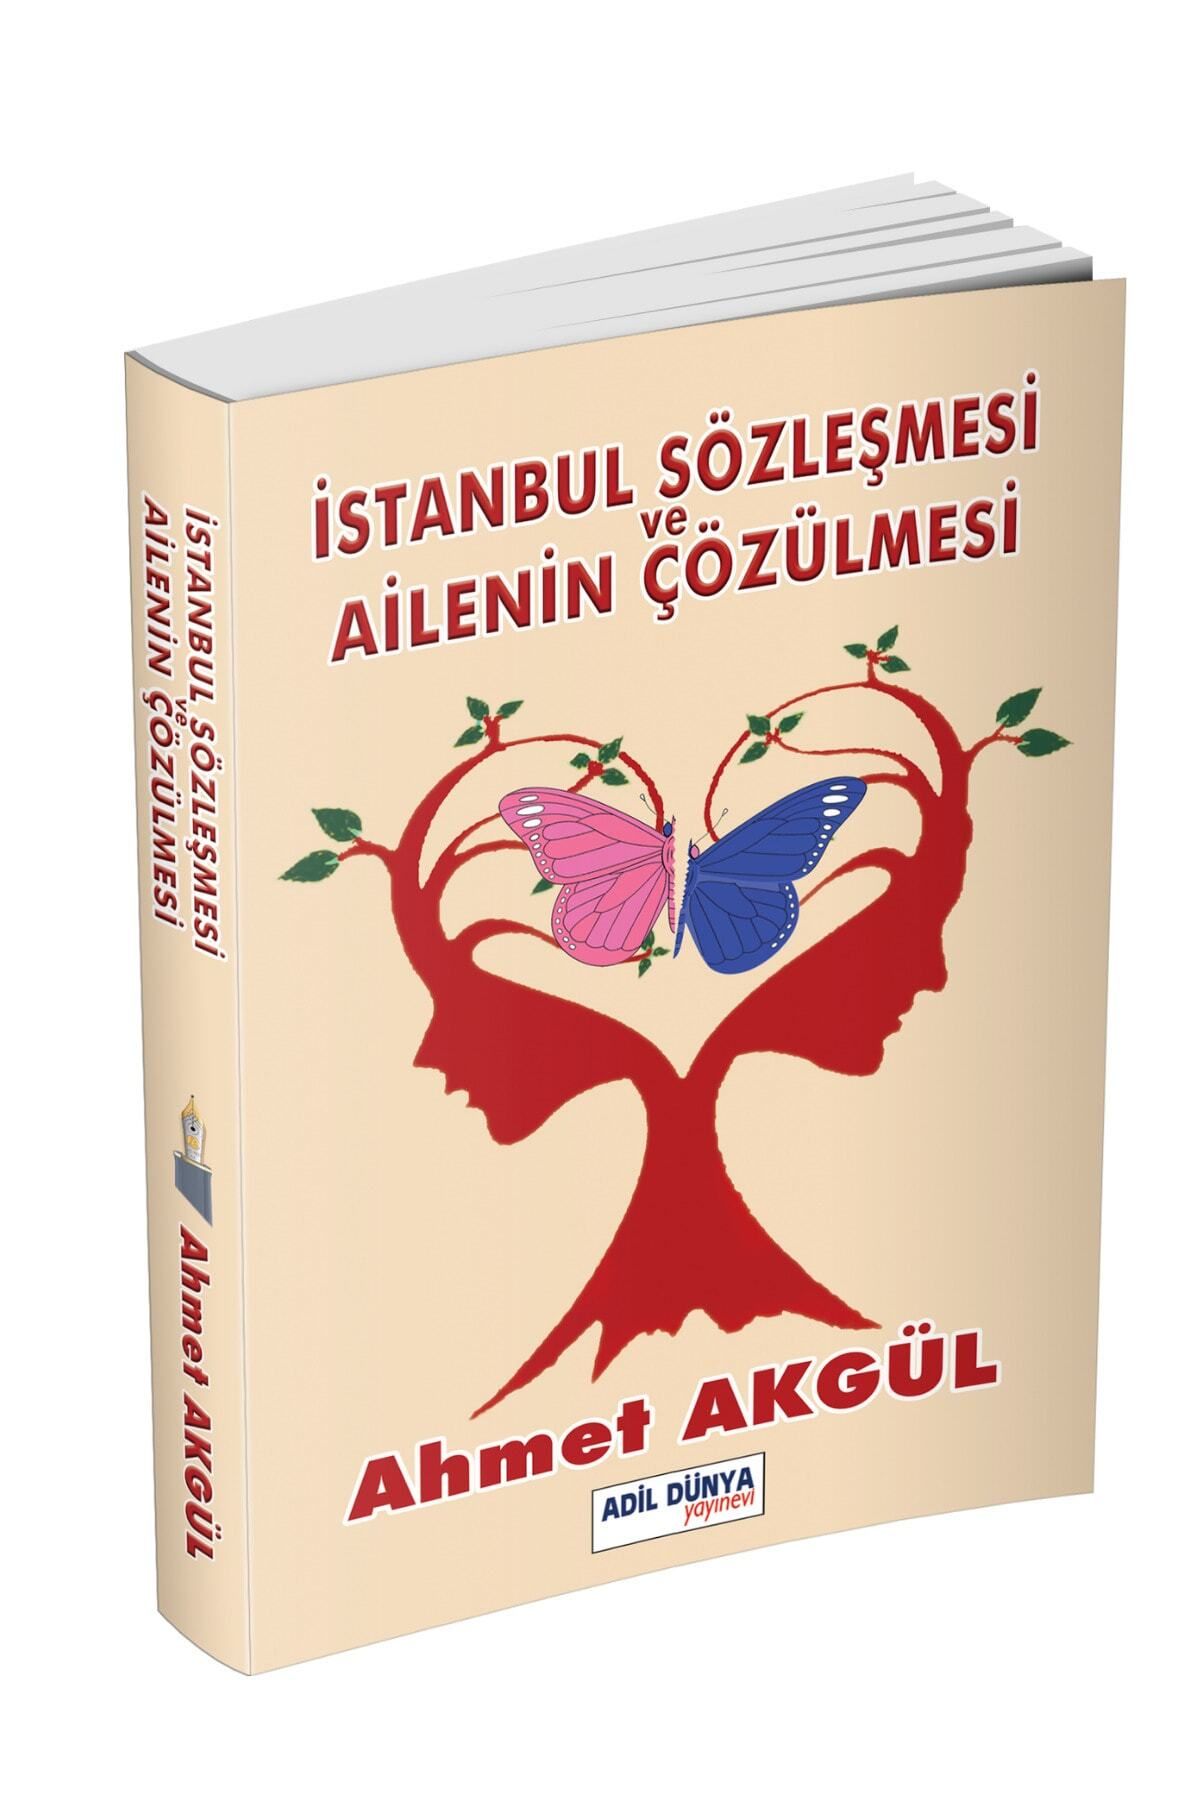 ADİL DÜNYA YAYINEVİ Istanbul Sözleşmesi Ve Ailenin Çözülmesi Ahmet Akgül